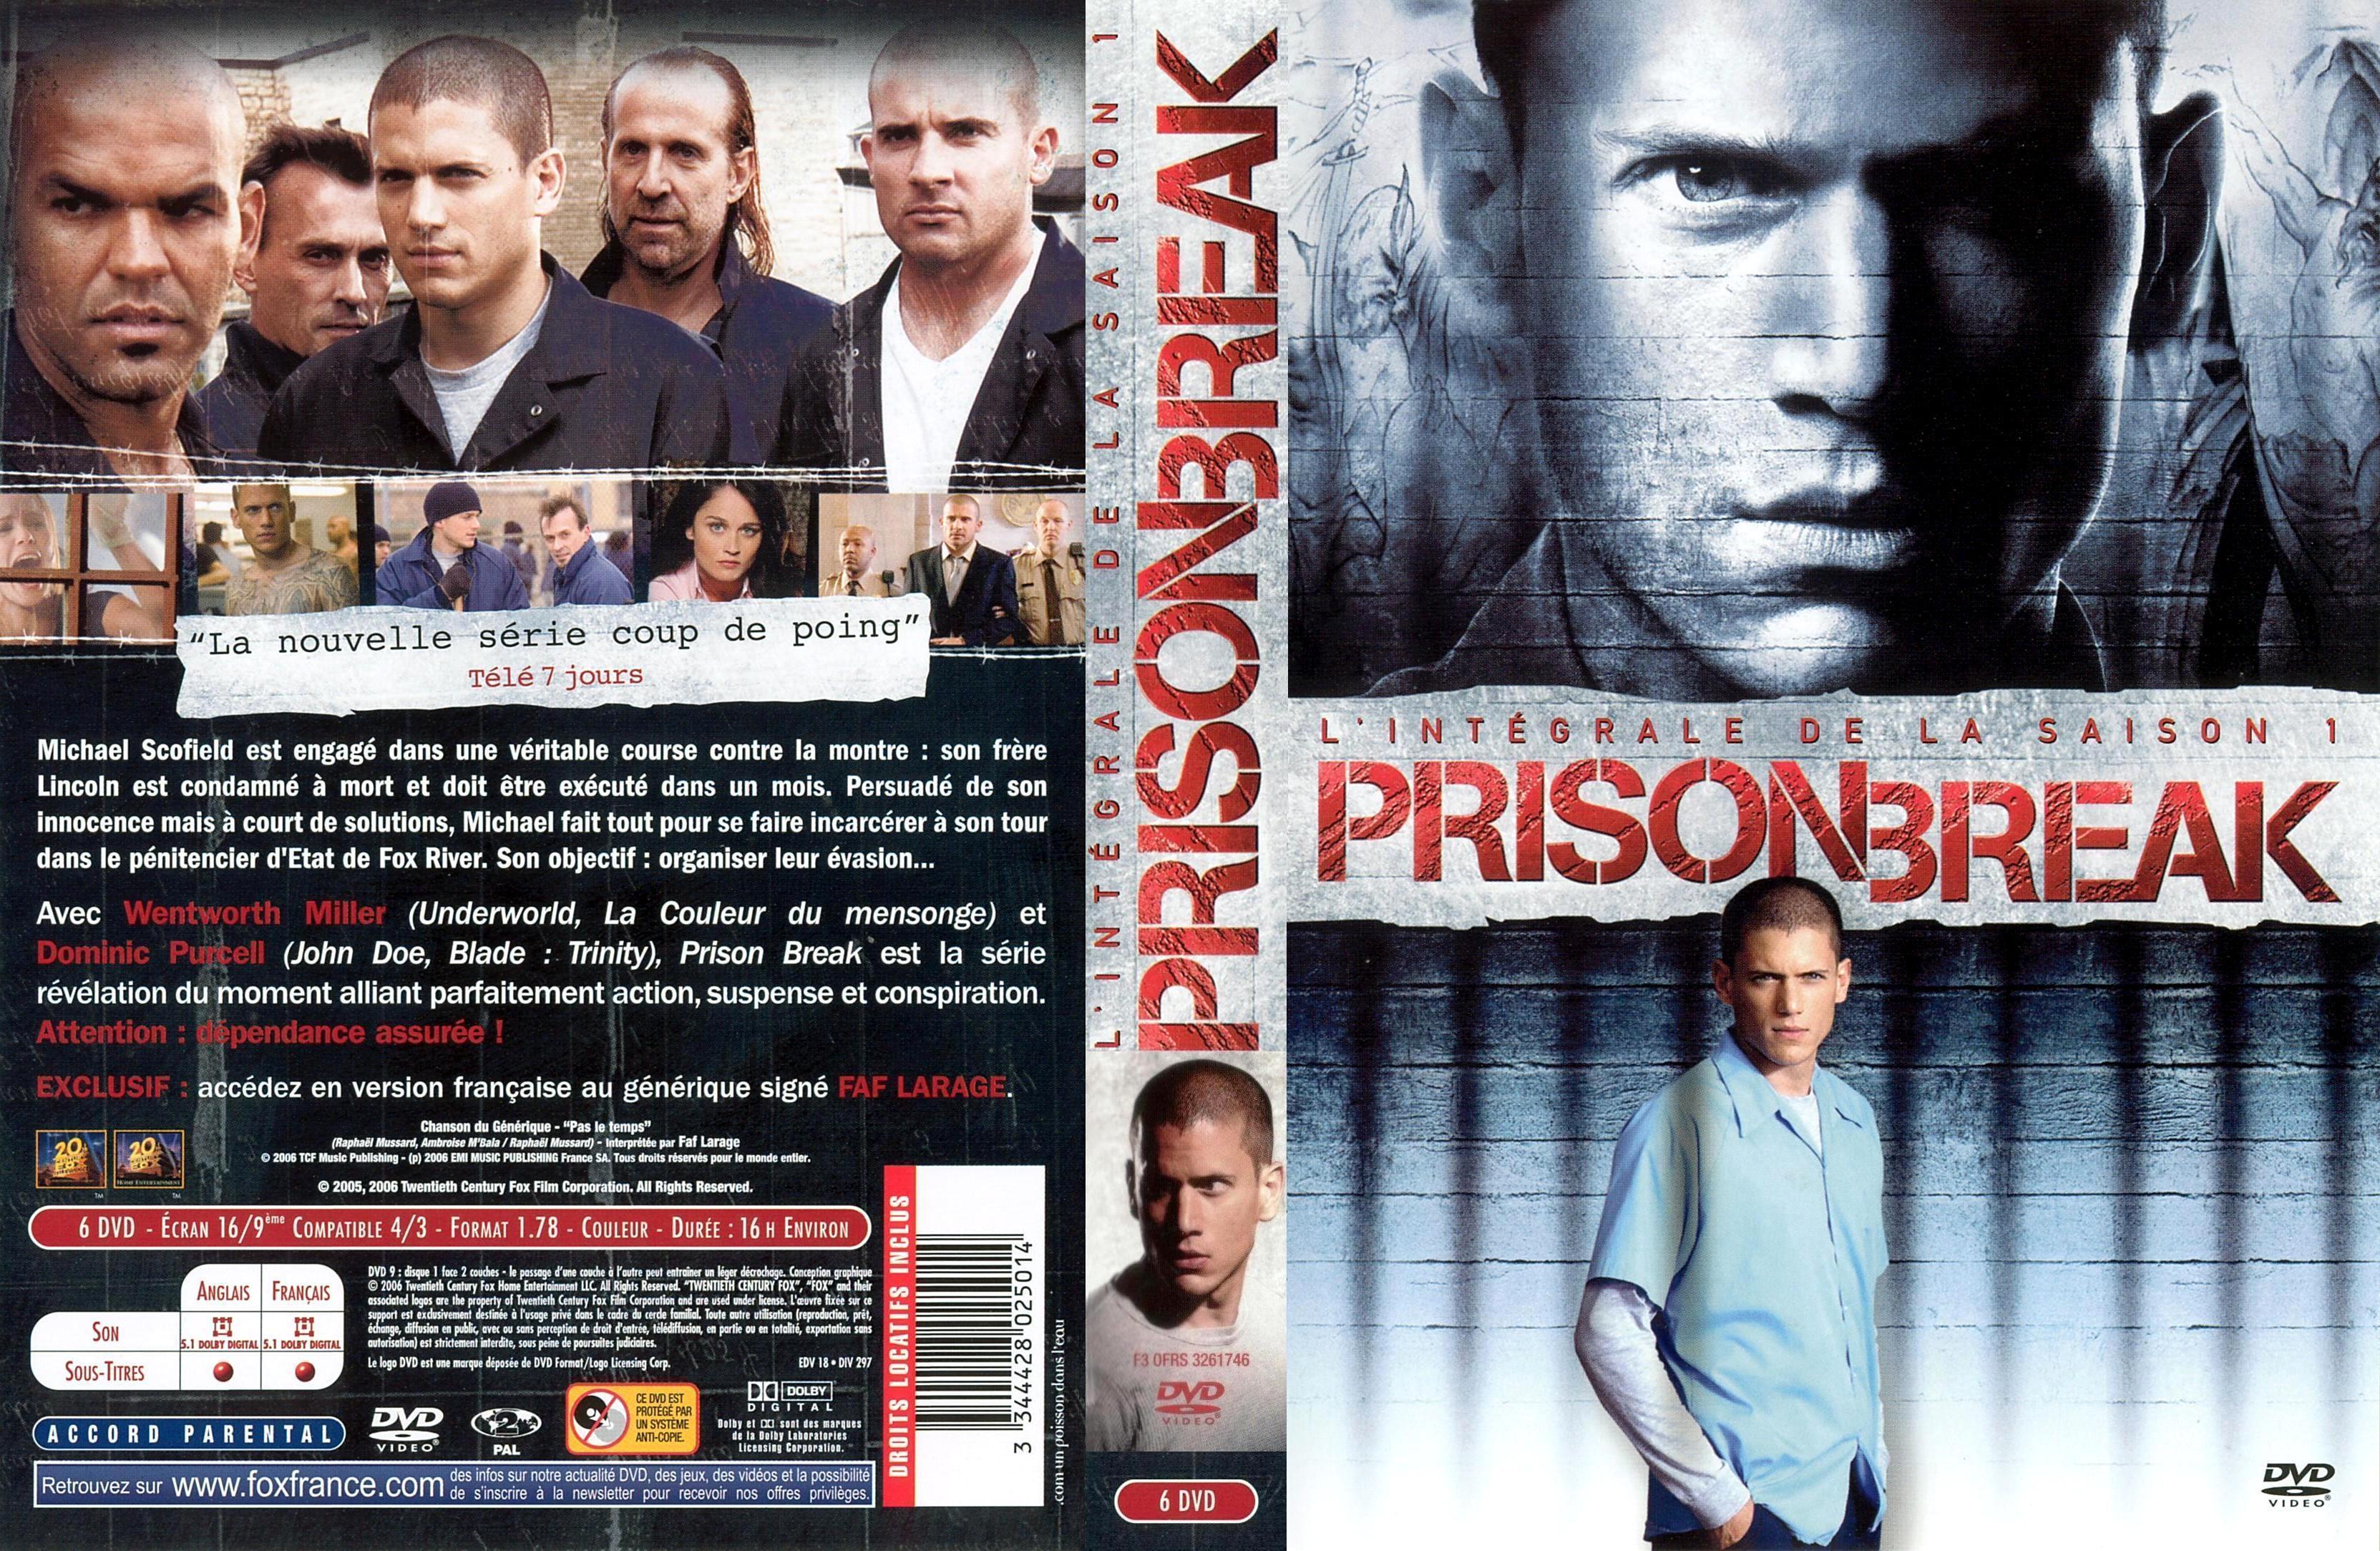 Jaquette DVD Prison break saison 1 COFFRET v2